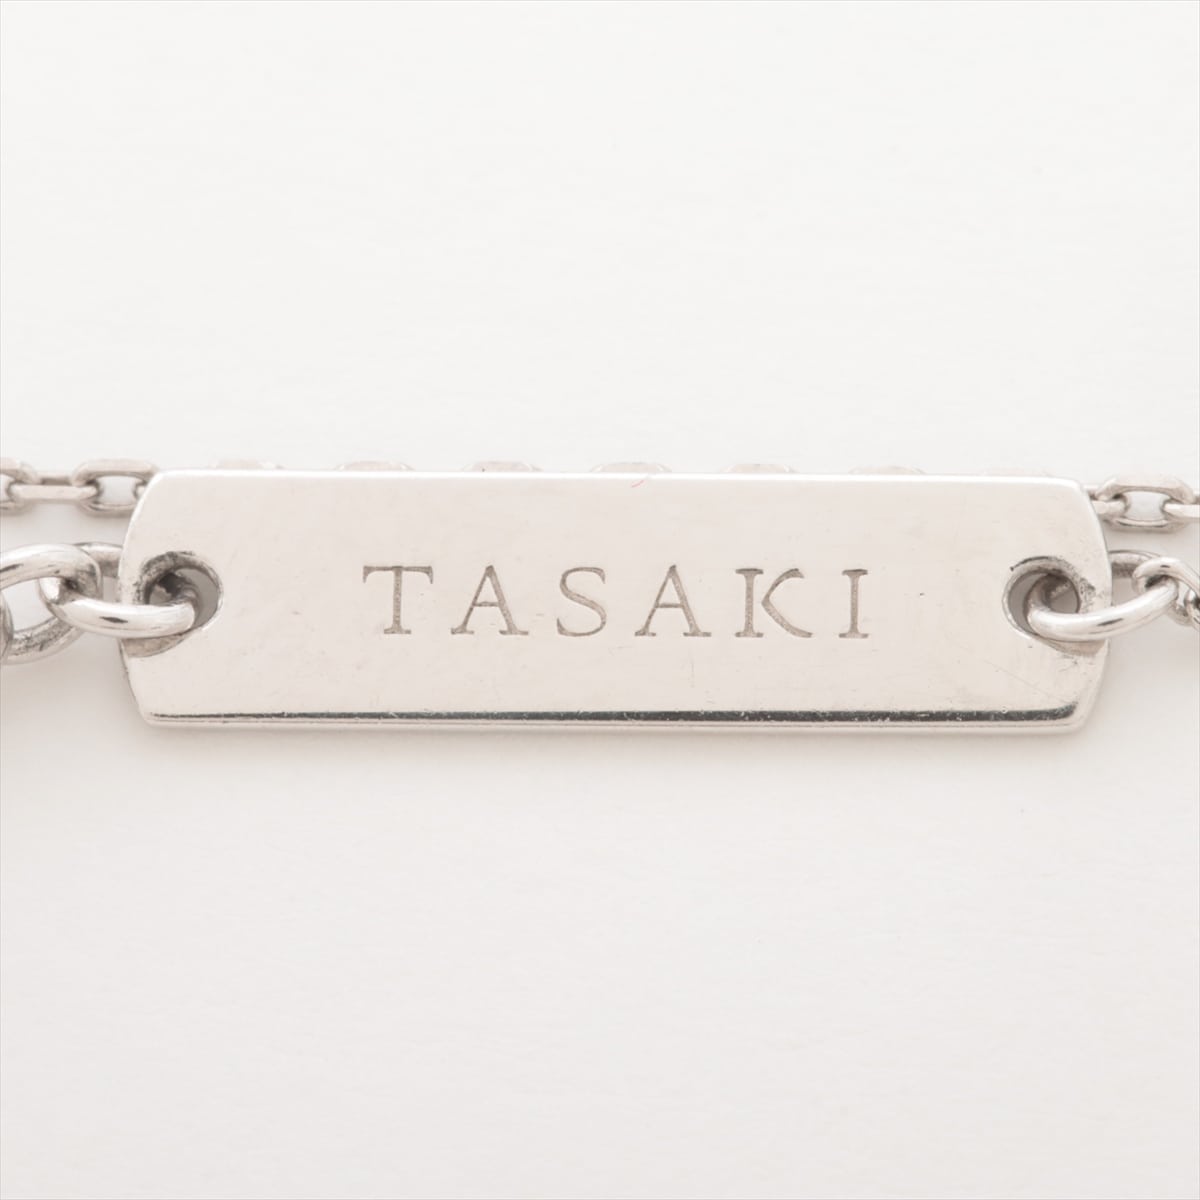 タサキ コーラスヴァレー ダイヤ ネックレス Pt900×Pt850 10.1g 0.93